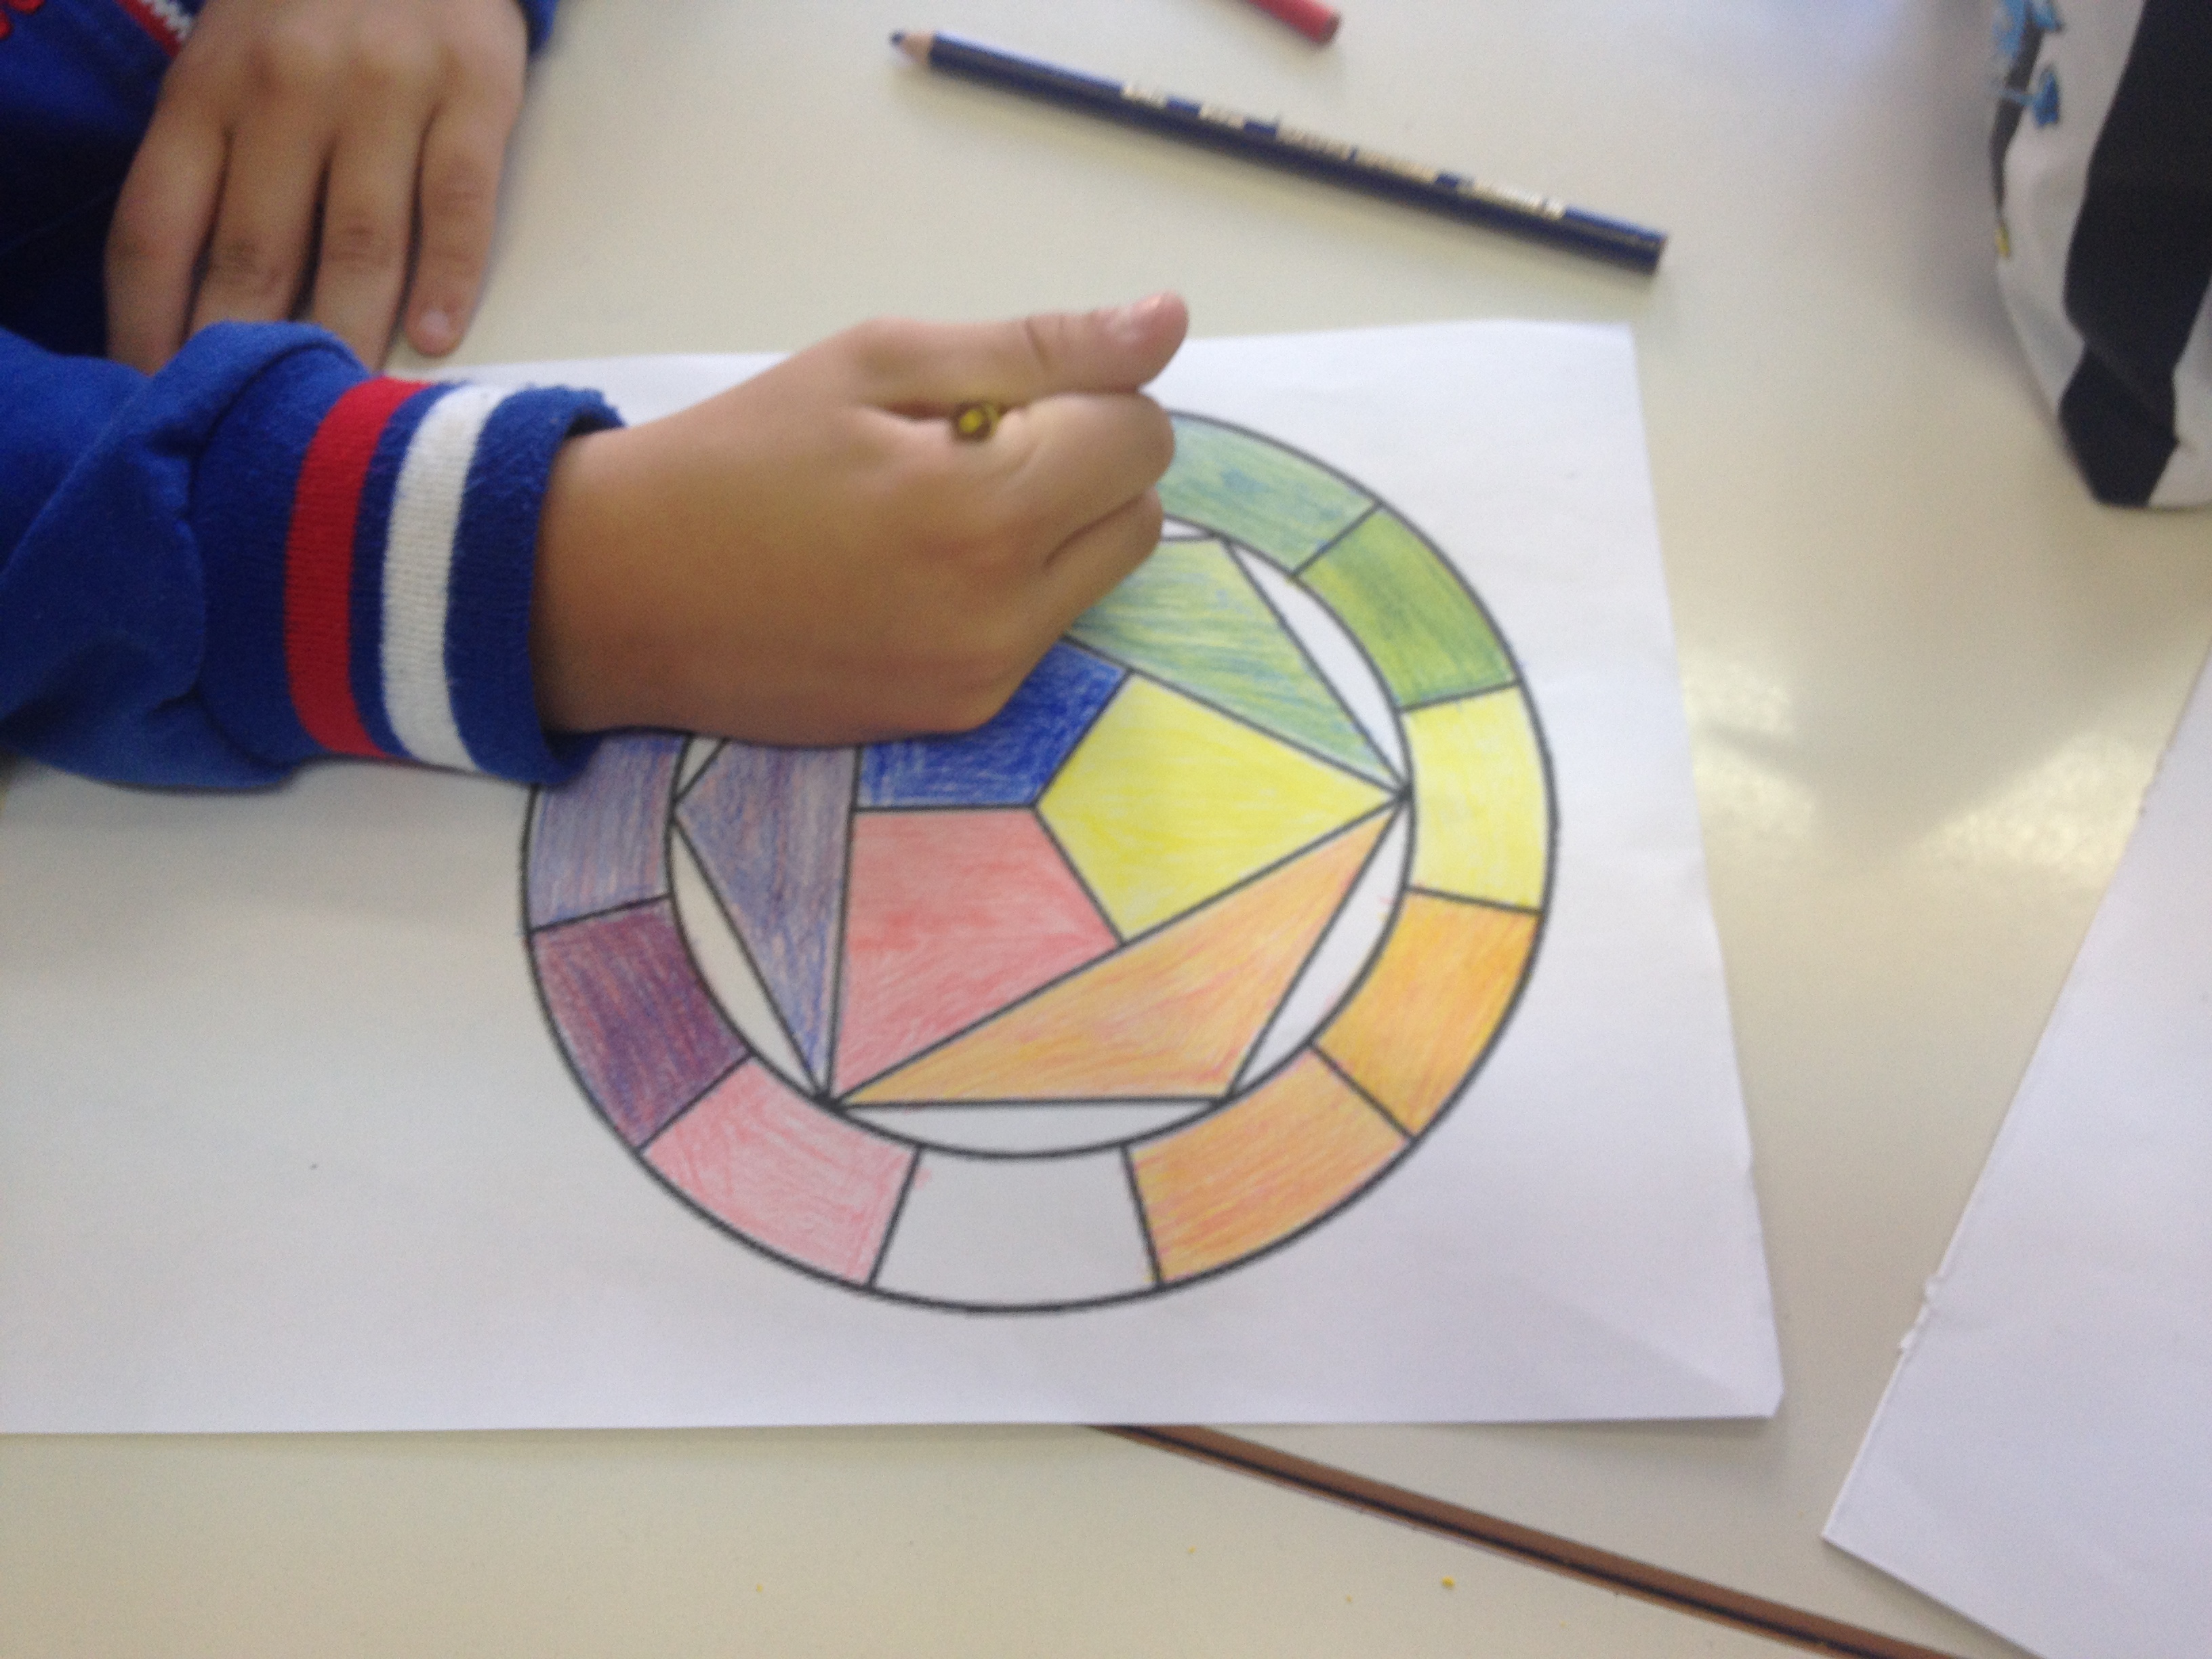 IL CERCHIO DI ITTEN Qual è lo strumento più utile per comprendere  l'abbinamento dei colori?🌈 Sicuramente tutti gli Artisti, Designer,  make-up Artist conoscono il cerchio di Itten. Inventato da Johanes Itten,  Pittore